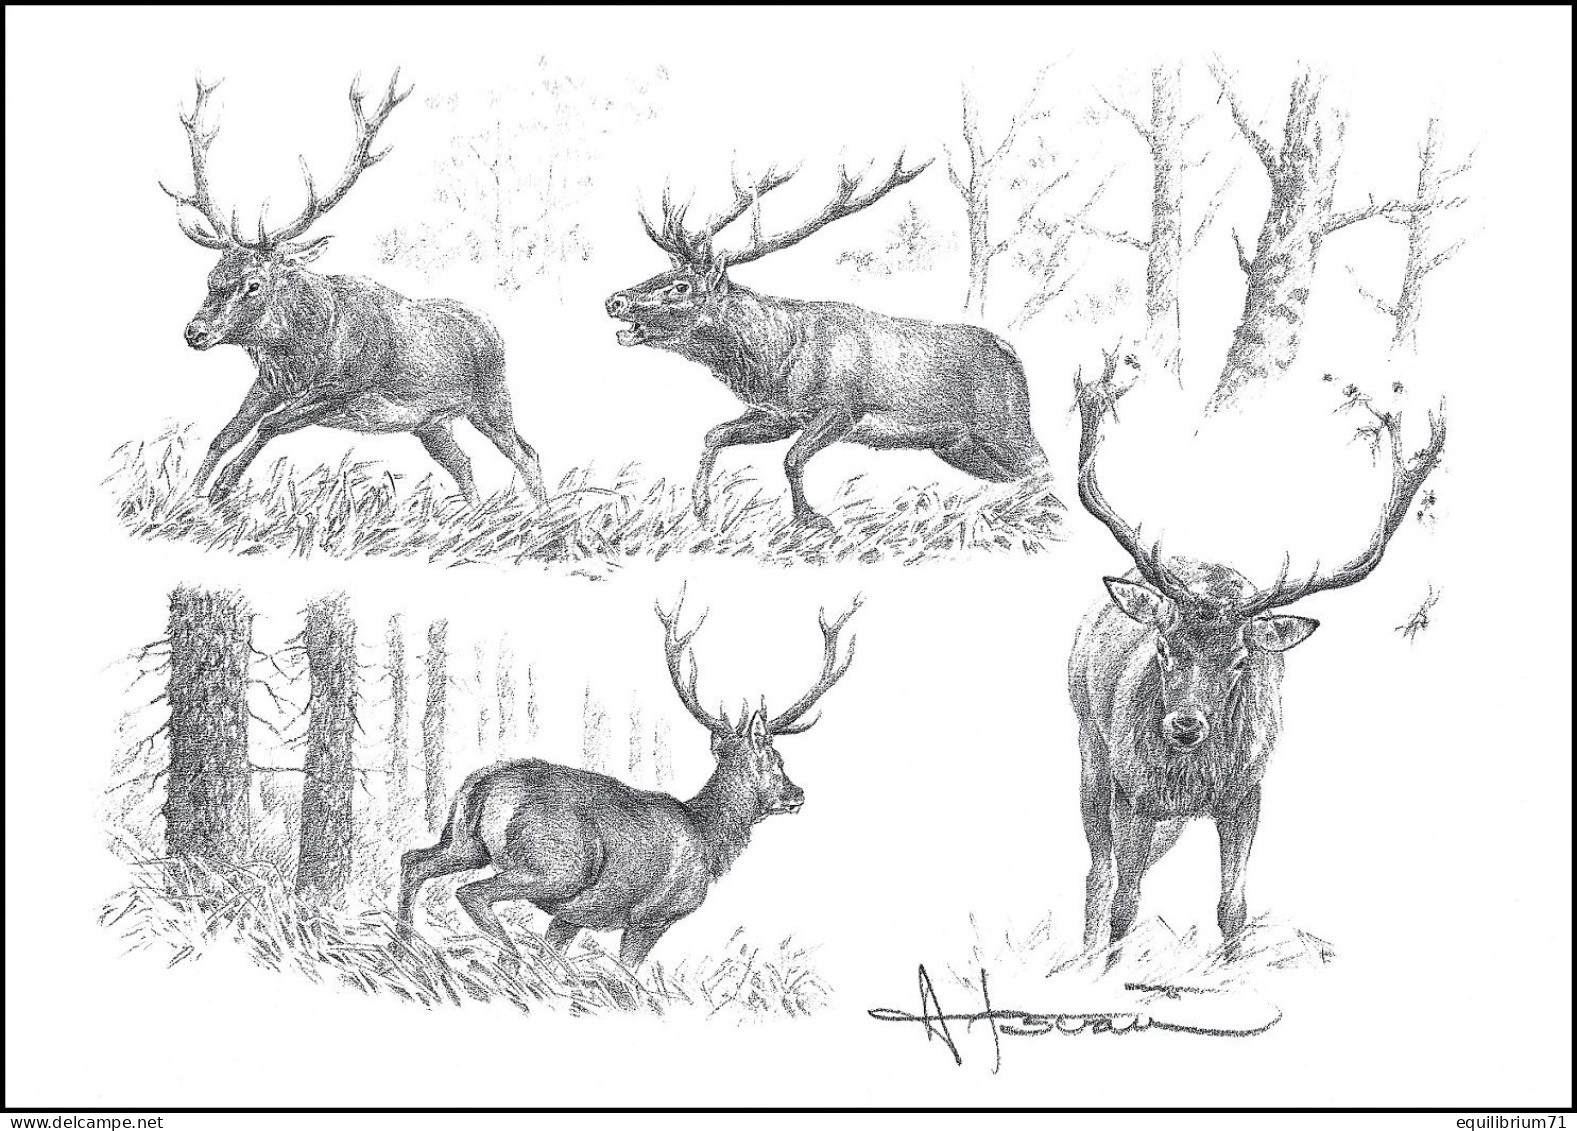 Dessin, Signé / Tekening, Getekend - Étude Cerf / Hert Studie / Hirschstudie / Deer  Study - BUZIN - Animalez De Caza